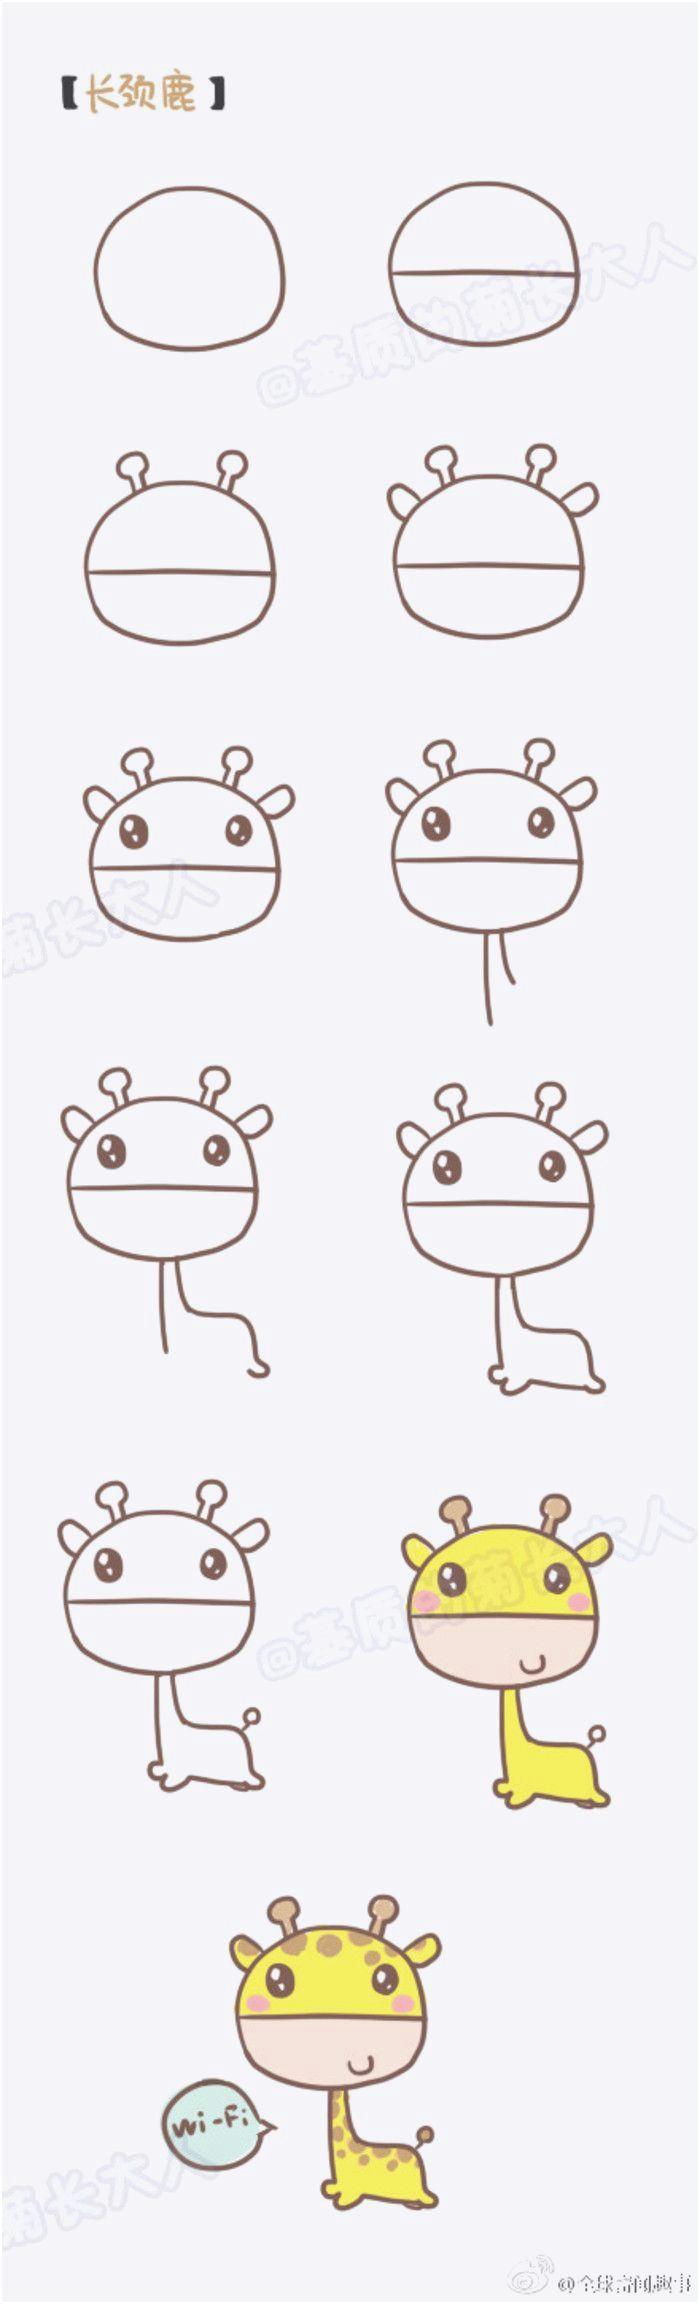 Drawing A Cartoon Giraffe Comic Zeichnen Vorlagen Muster Und Vorlage